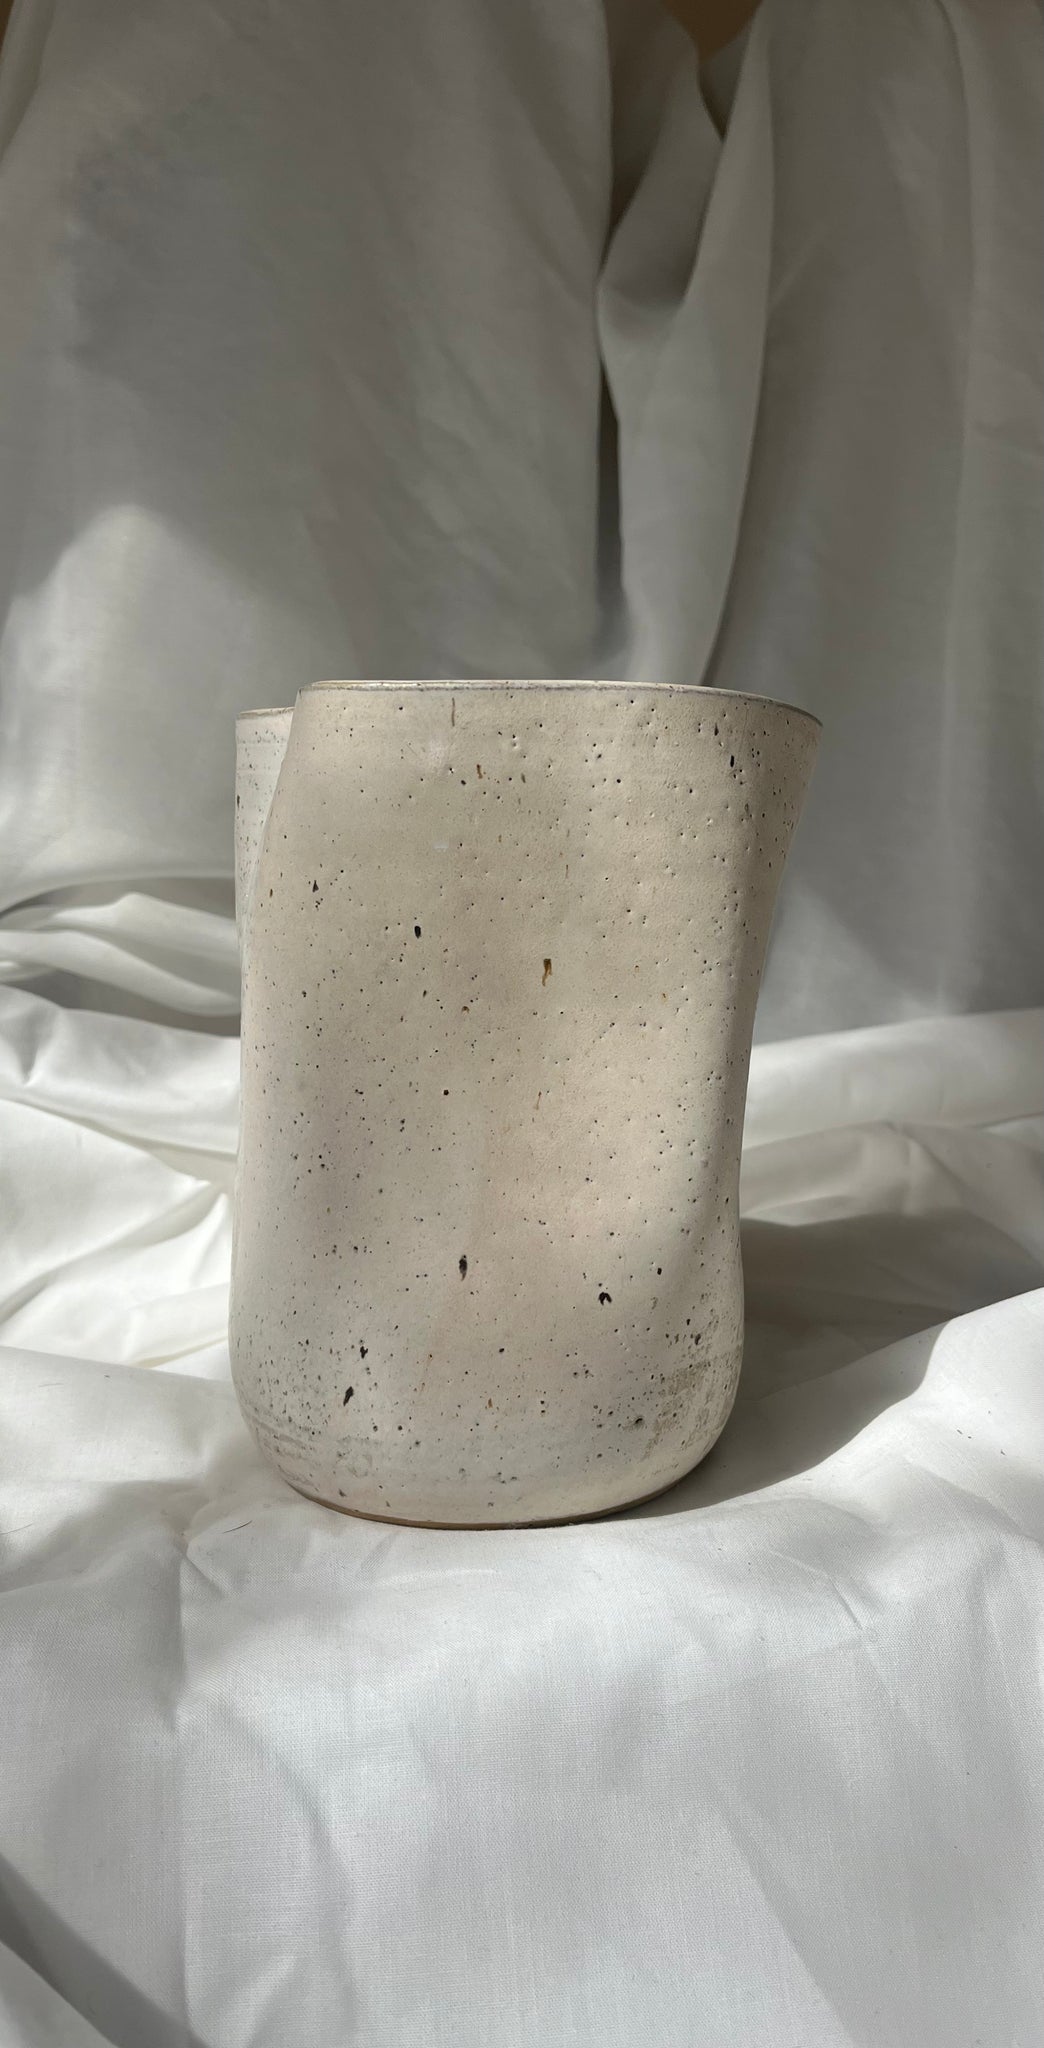 Deformed vase in beige by hap